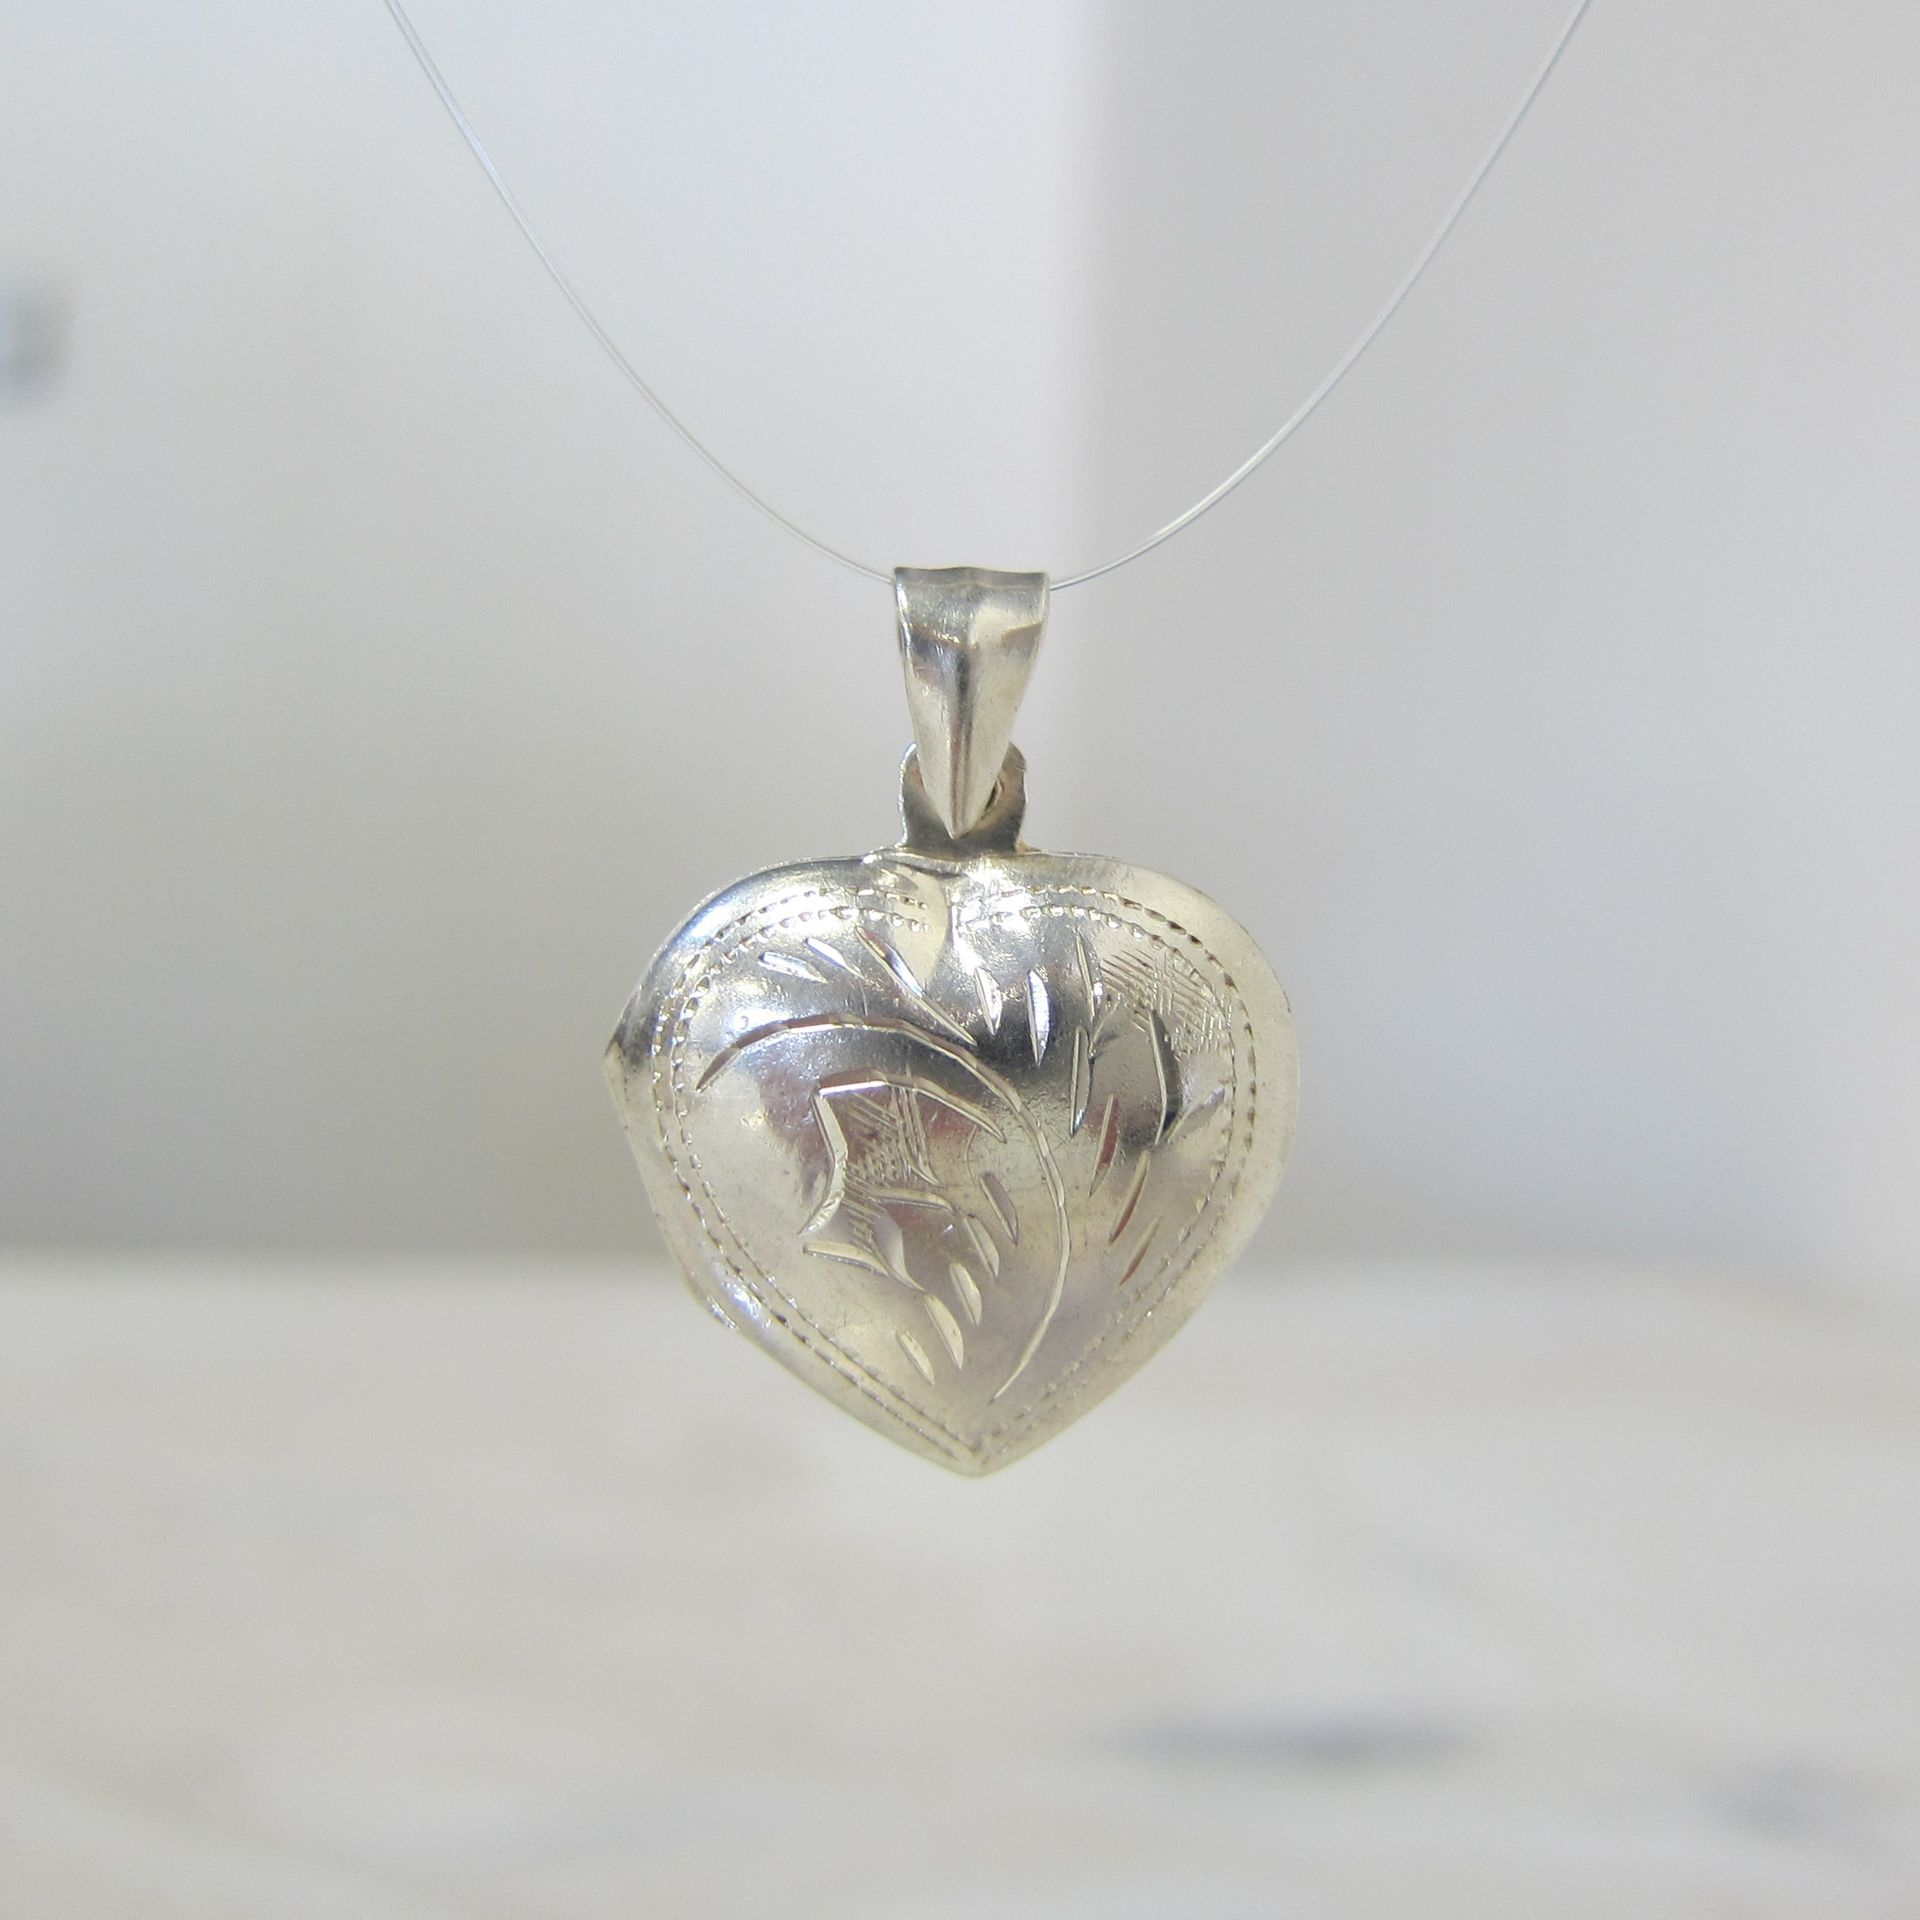 Sterling Silver Heart Locket Pendant